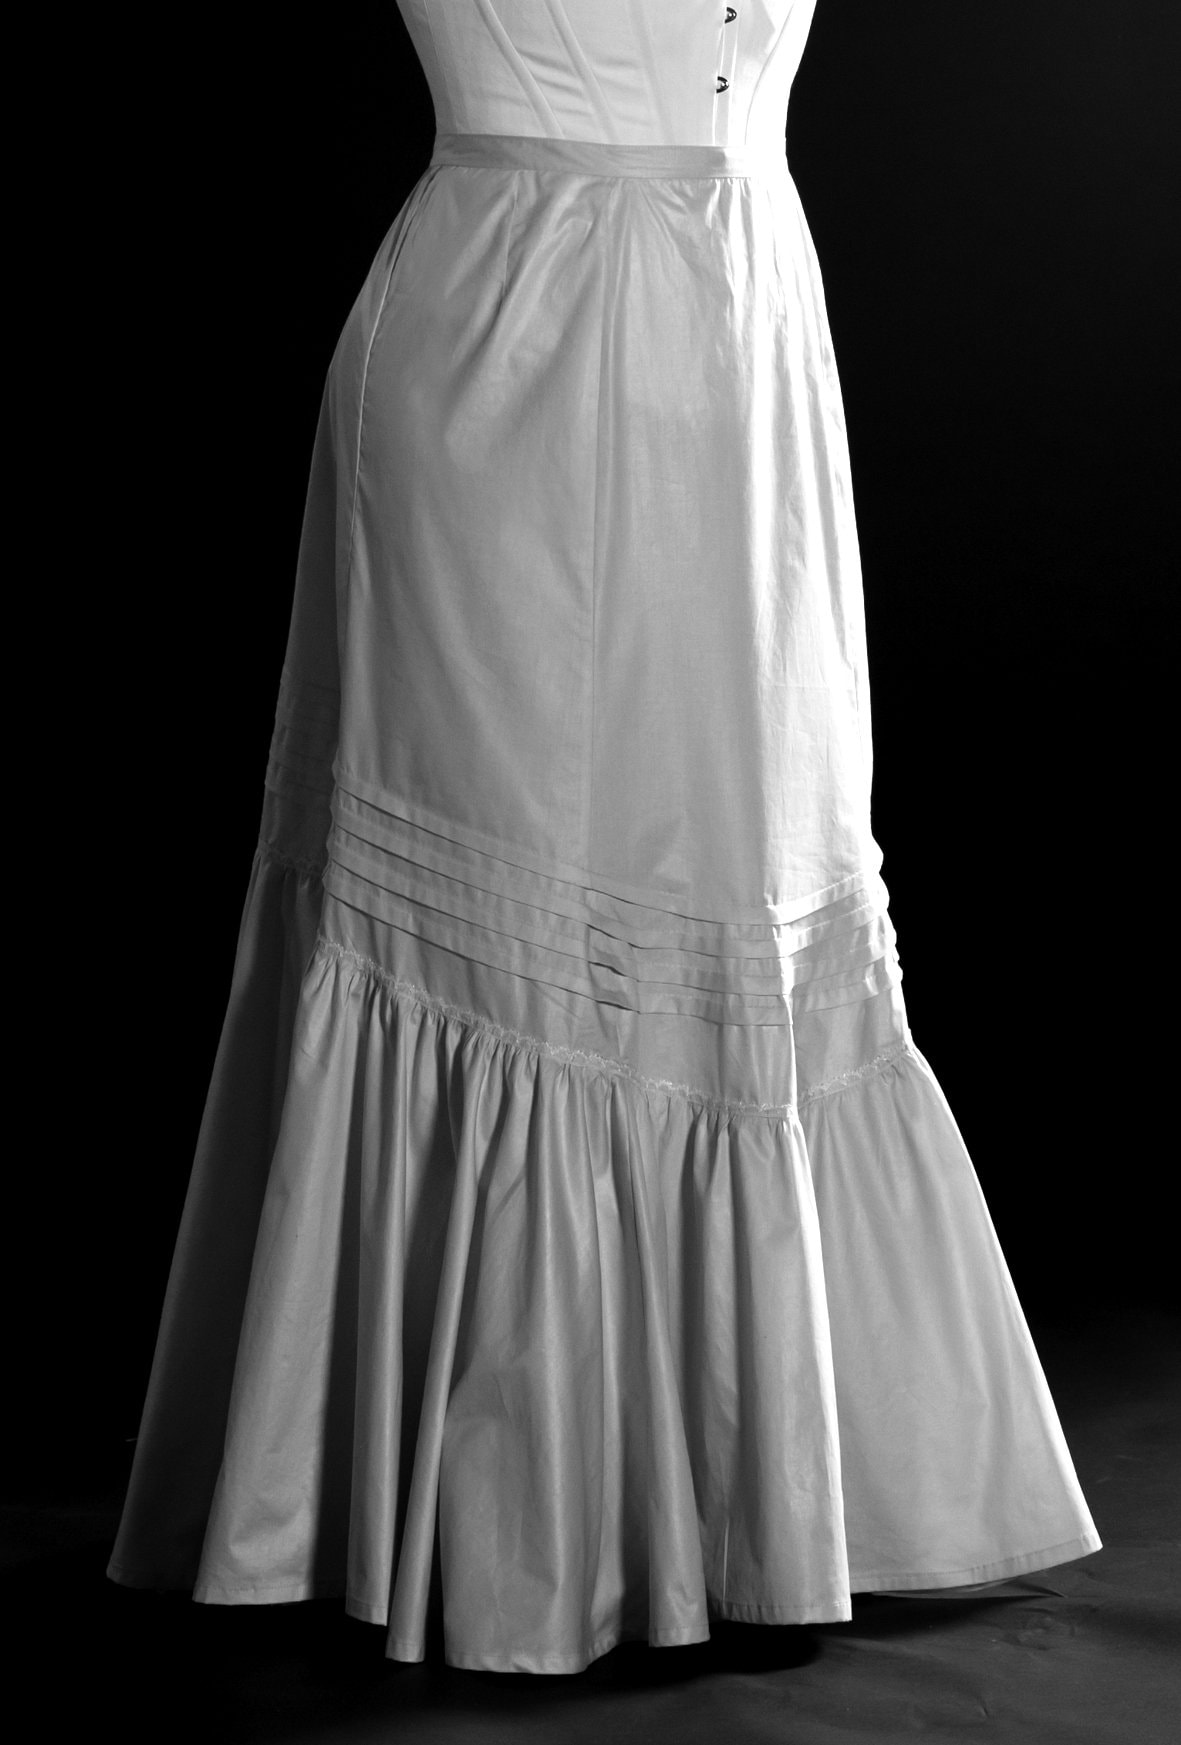 Edwardian Tullip Petticoat in Polished Cotton Skirt train | Etsy